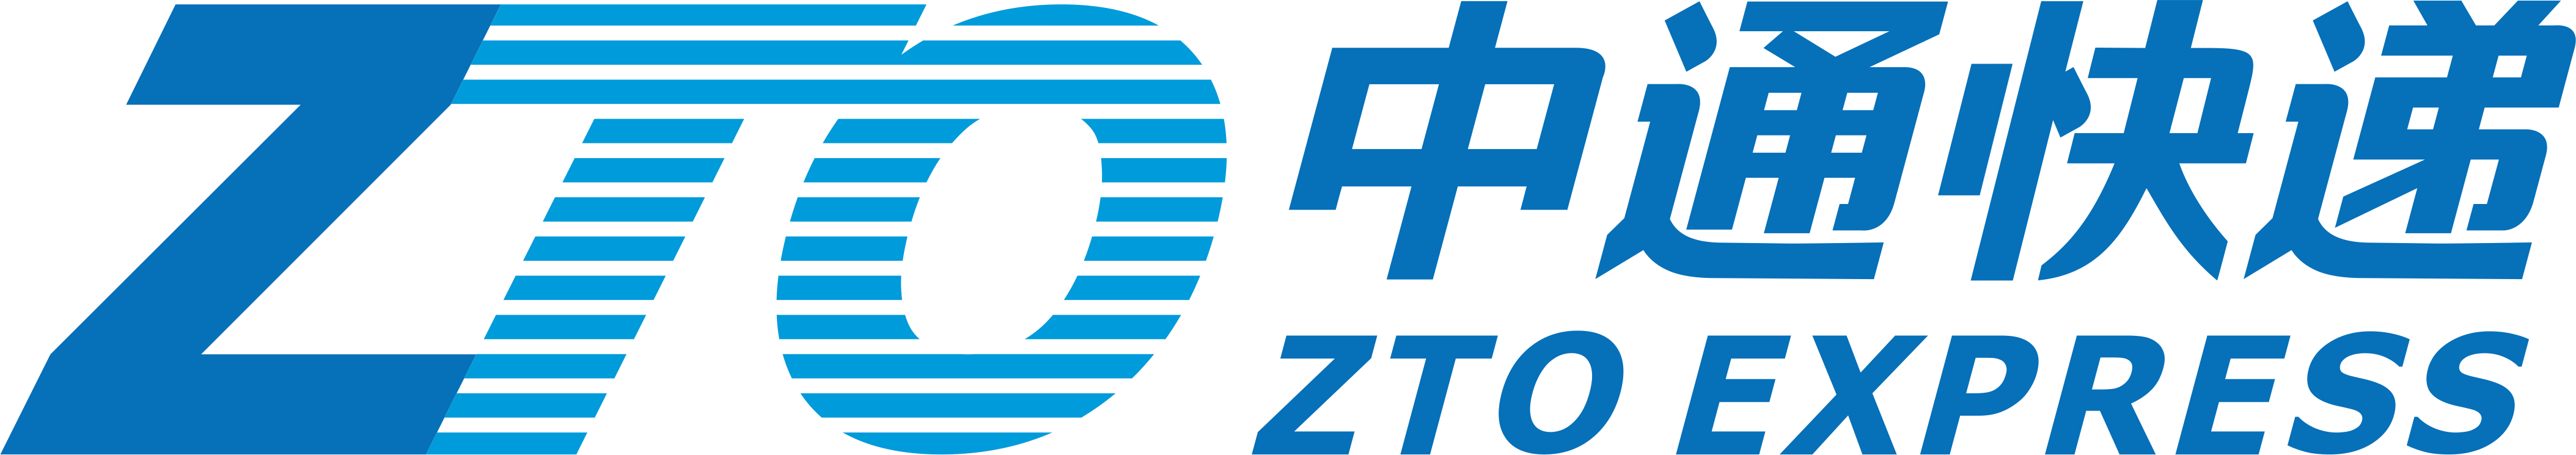 ZTO Express Brand Logo